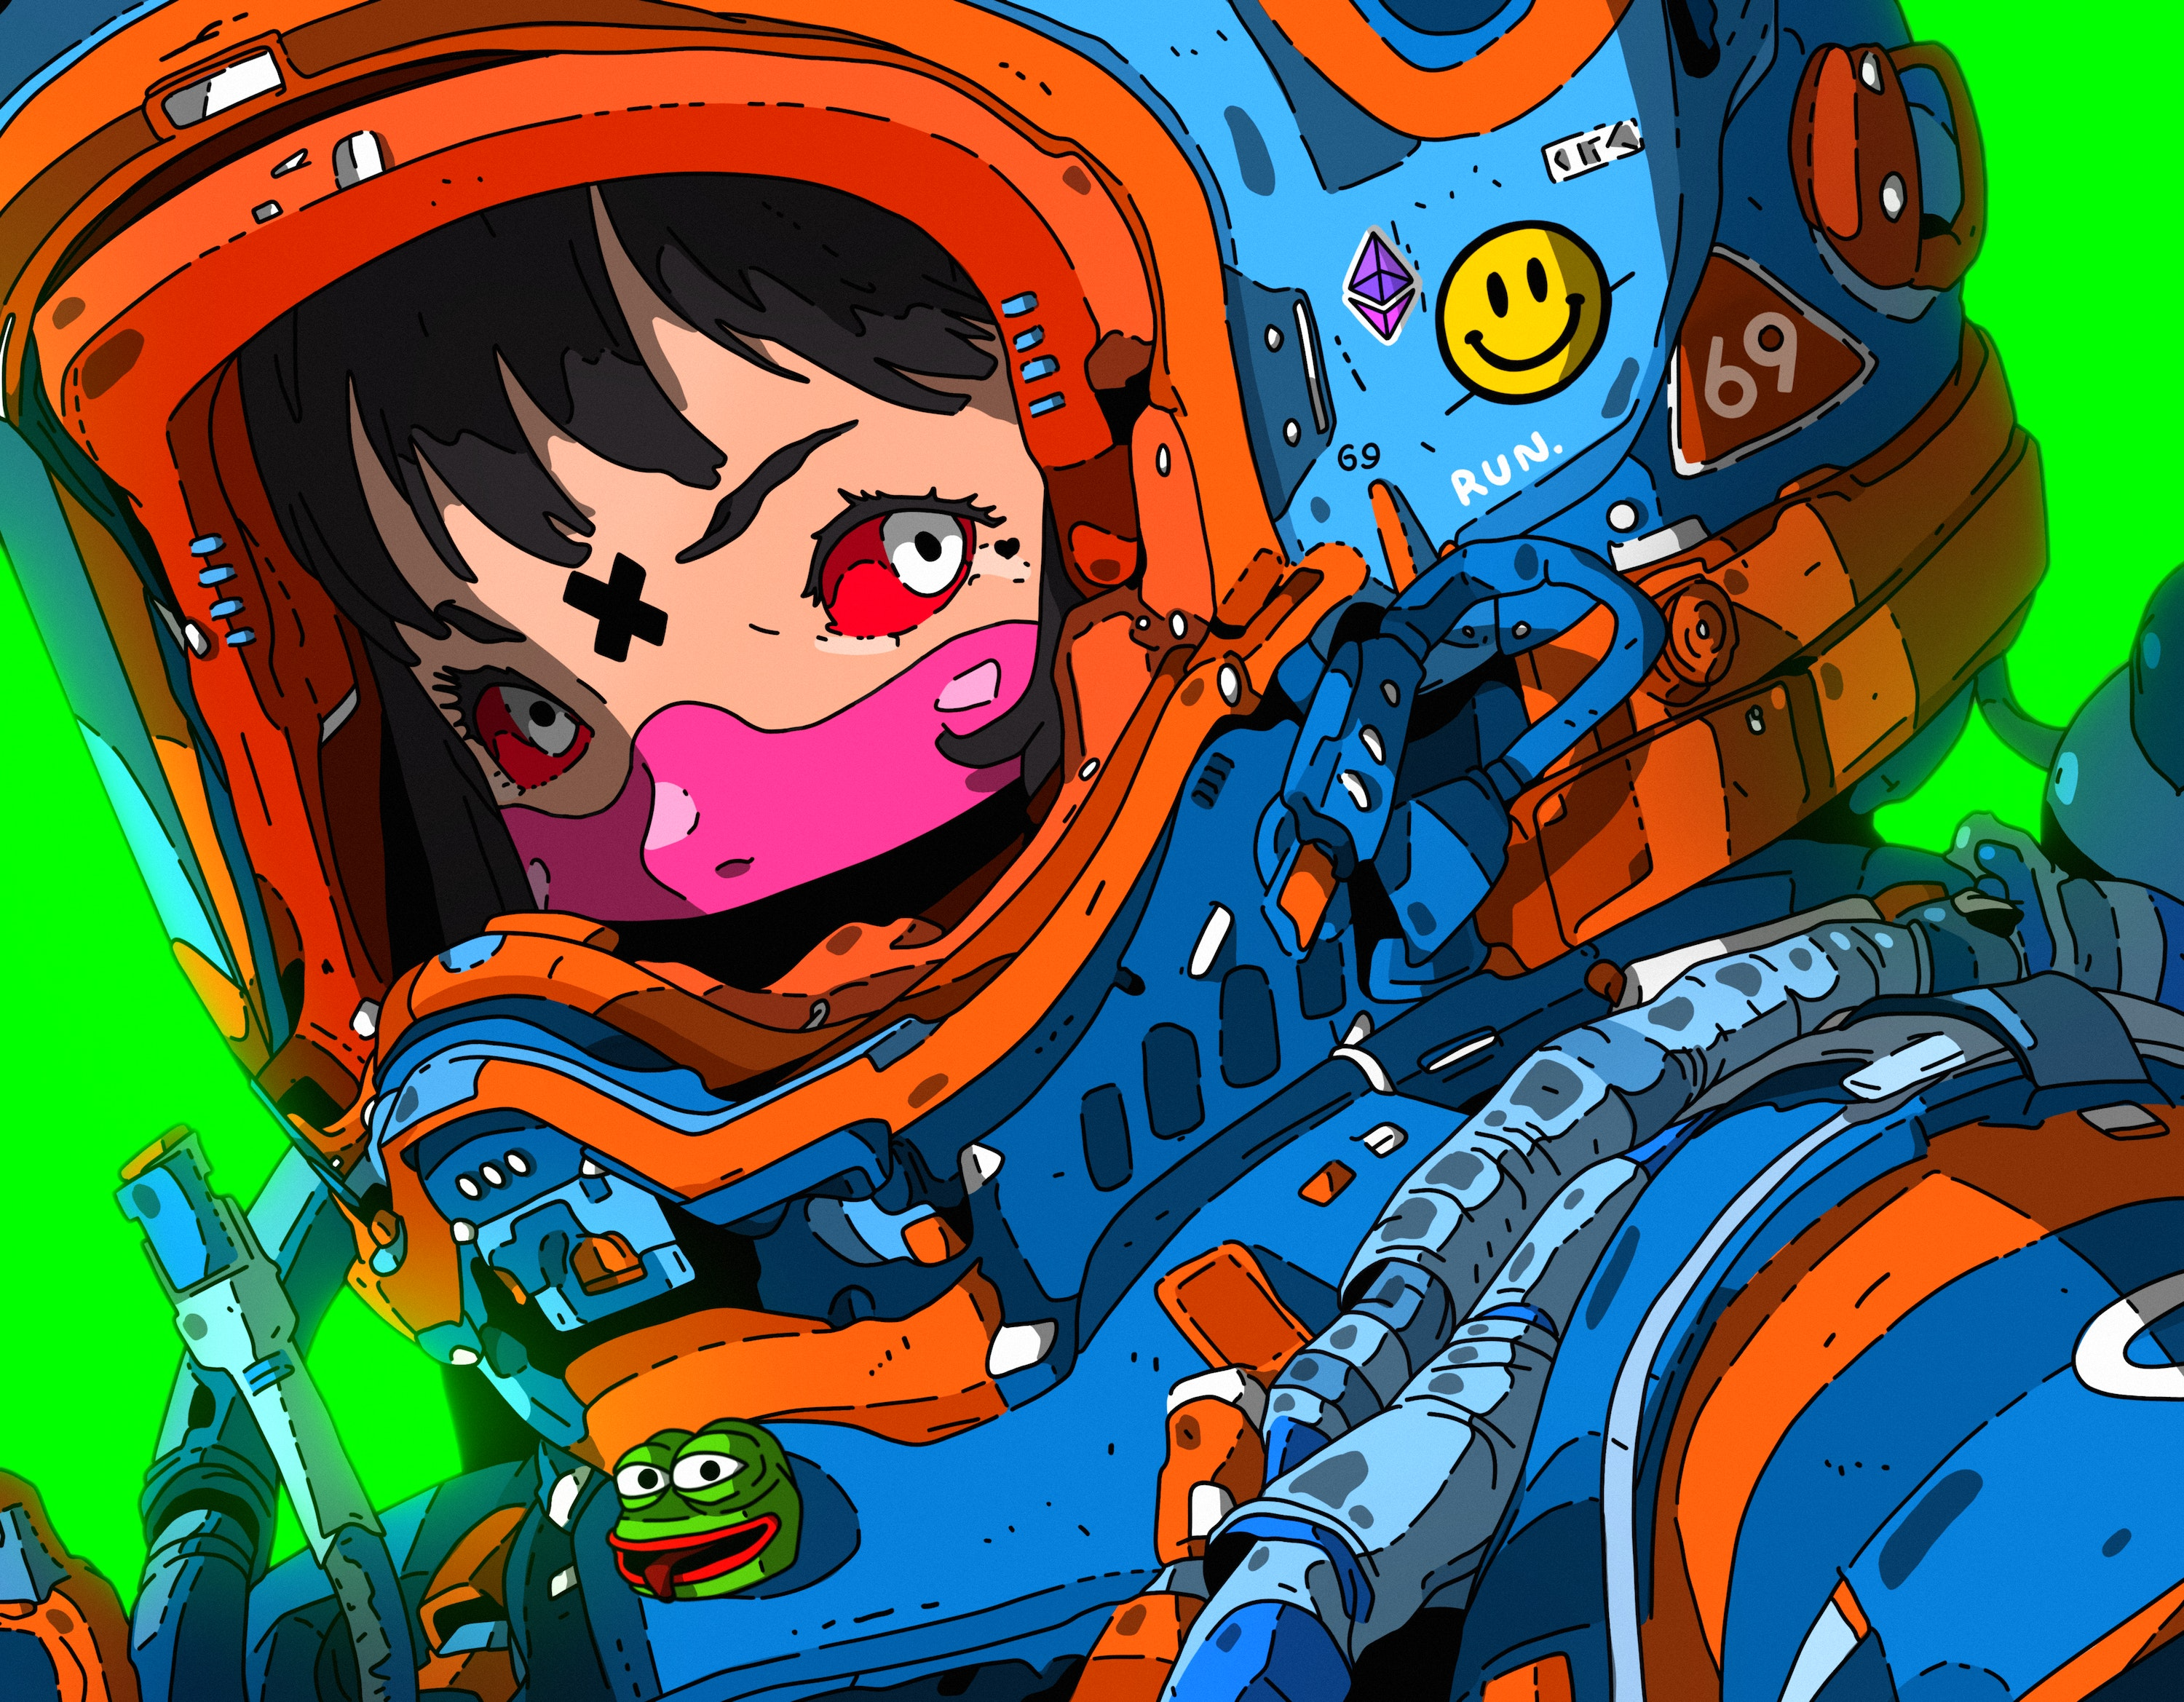 General 3000x2338 digital art artwork illustration women colorful helmet spacesuit stickers Pepe (meme) eyes smiley numbers